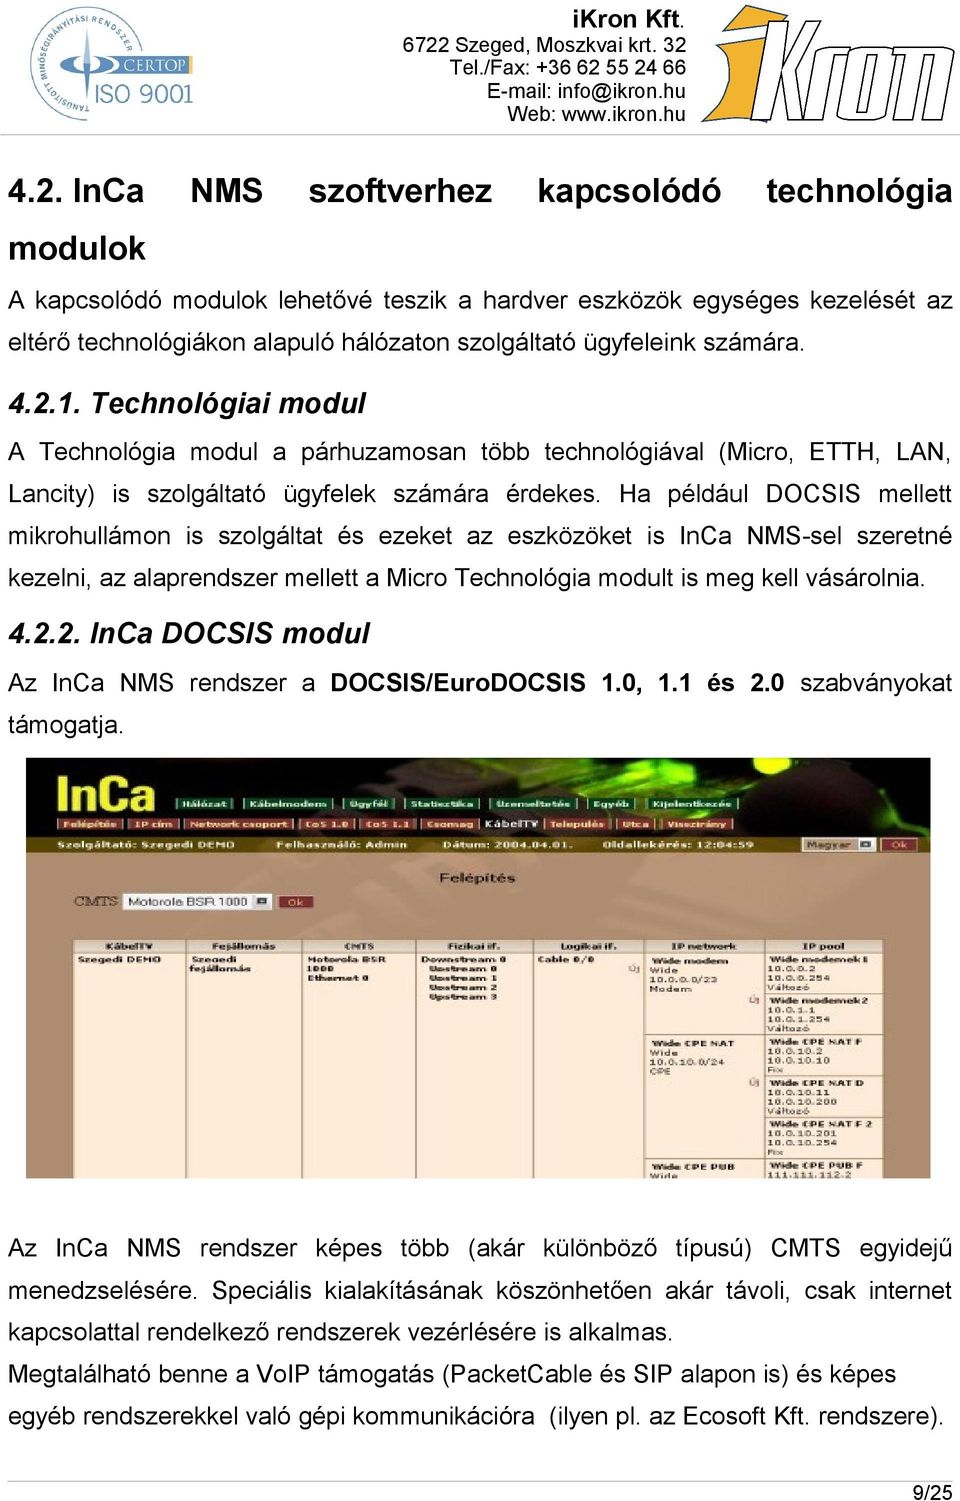 Ha például DOCSIS mellett mikrohullámon is szolgáltat és ezeket az eszközöket is InCa NMS-sel szeretné kezelni, az alaprendszer mellett a Micro Technológia modult is meg kell vásárolnia. 4.2.